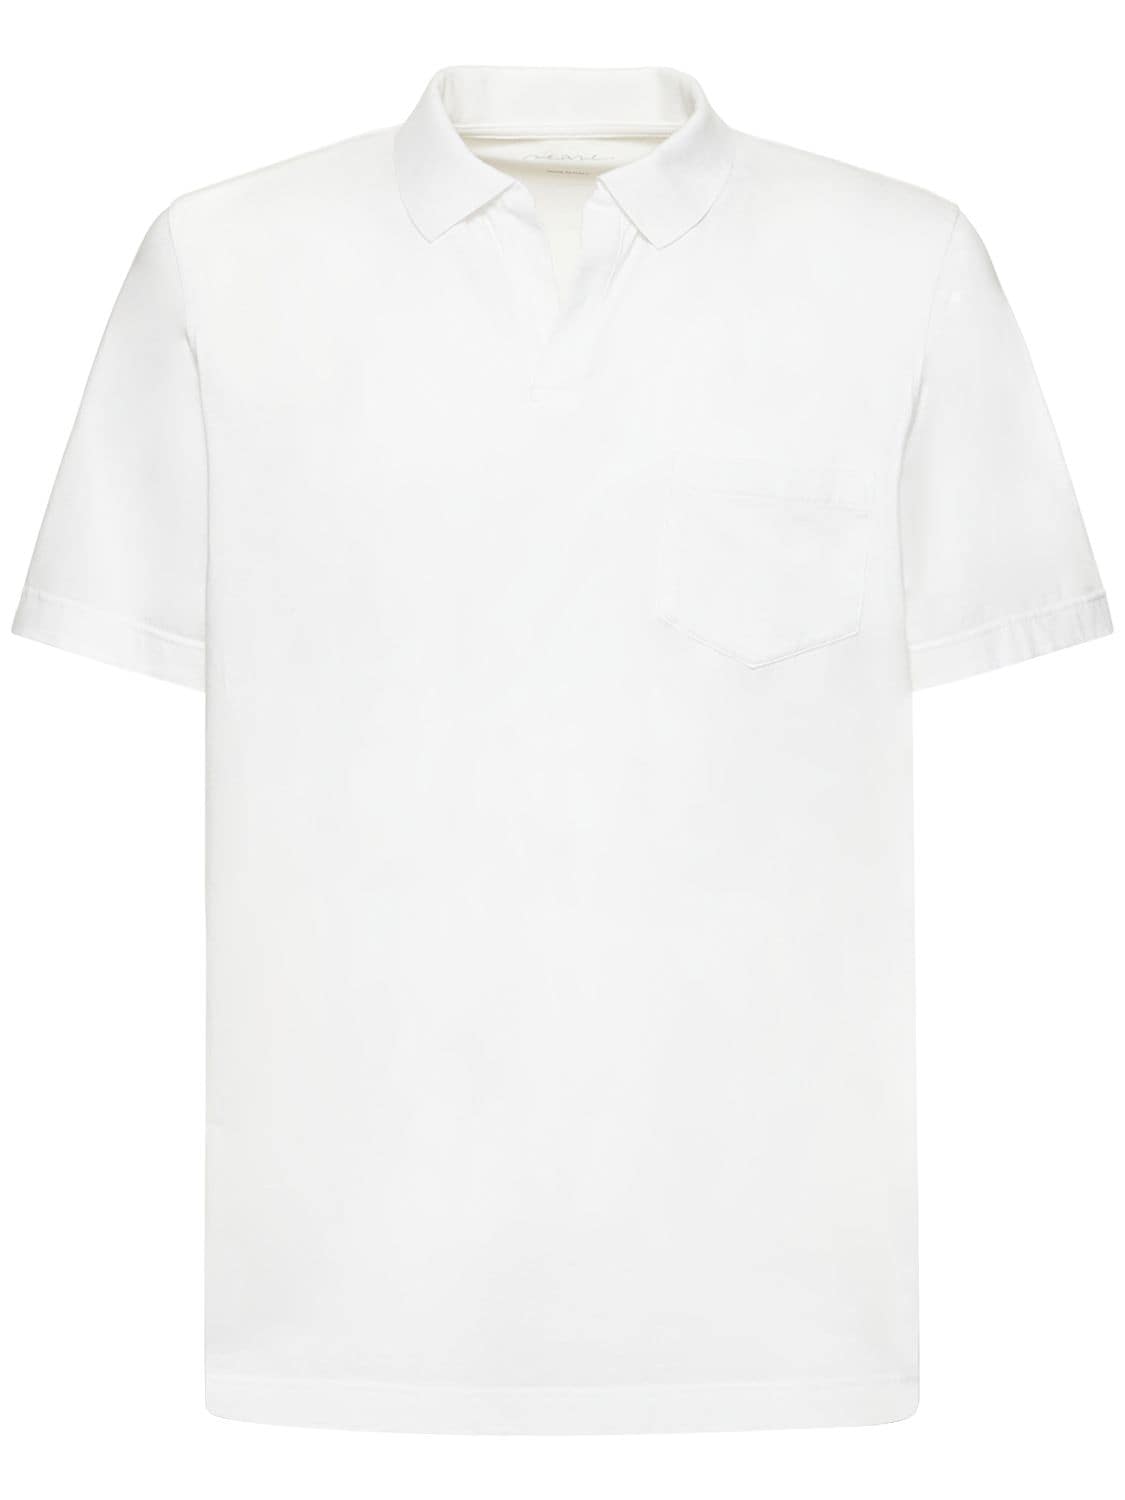 Sease Nylon Jersey Polo In White